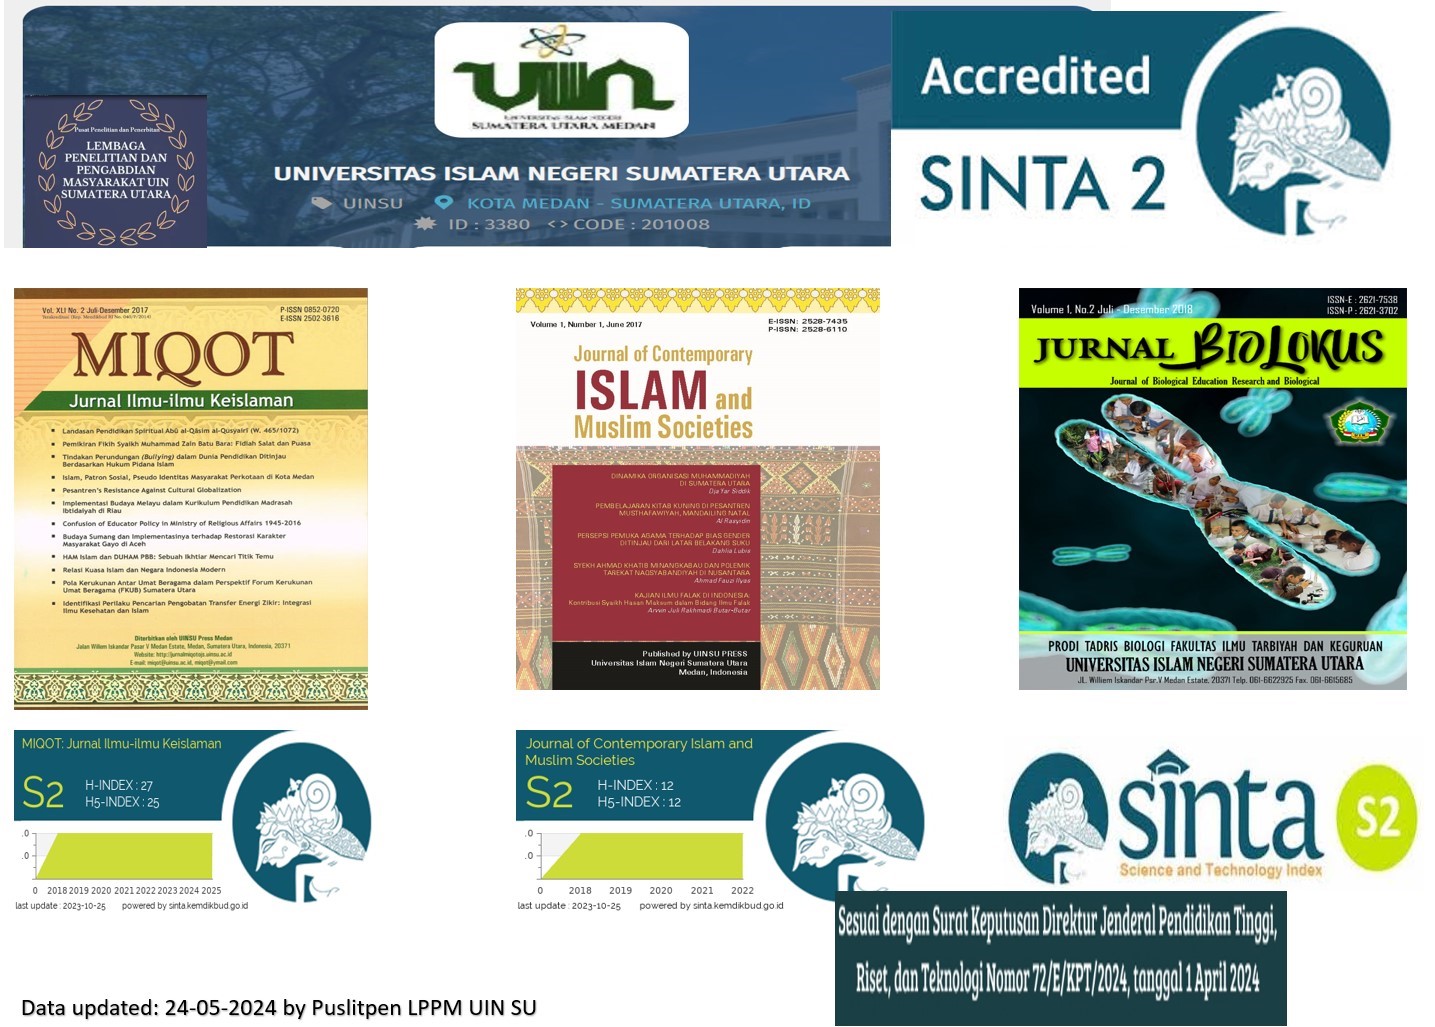 UIN SU Capai Jurnal Akreditasi SINTA-2 Terbanyak pada Wilayah Provinsi Sumatera Utara